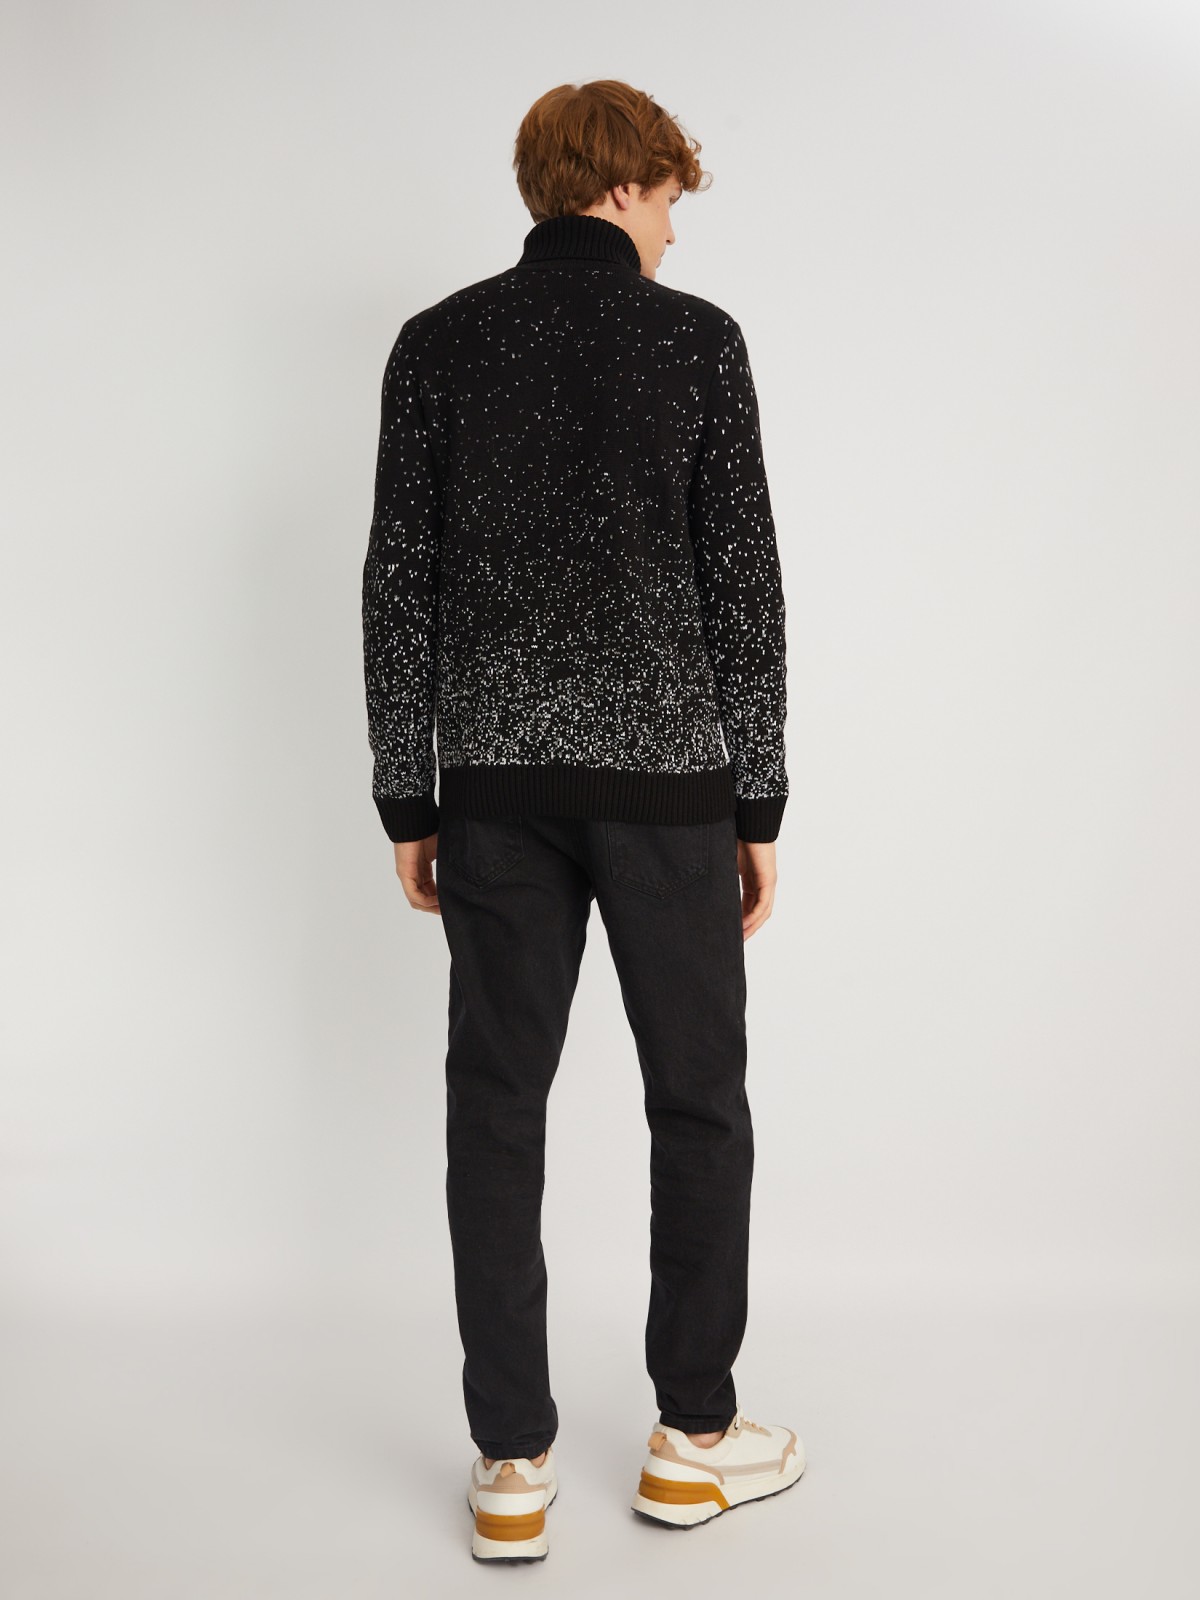 Вязаный свитер из акрила с волком zolla 013446123023, цвет черный, размер S - фото 6